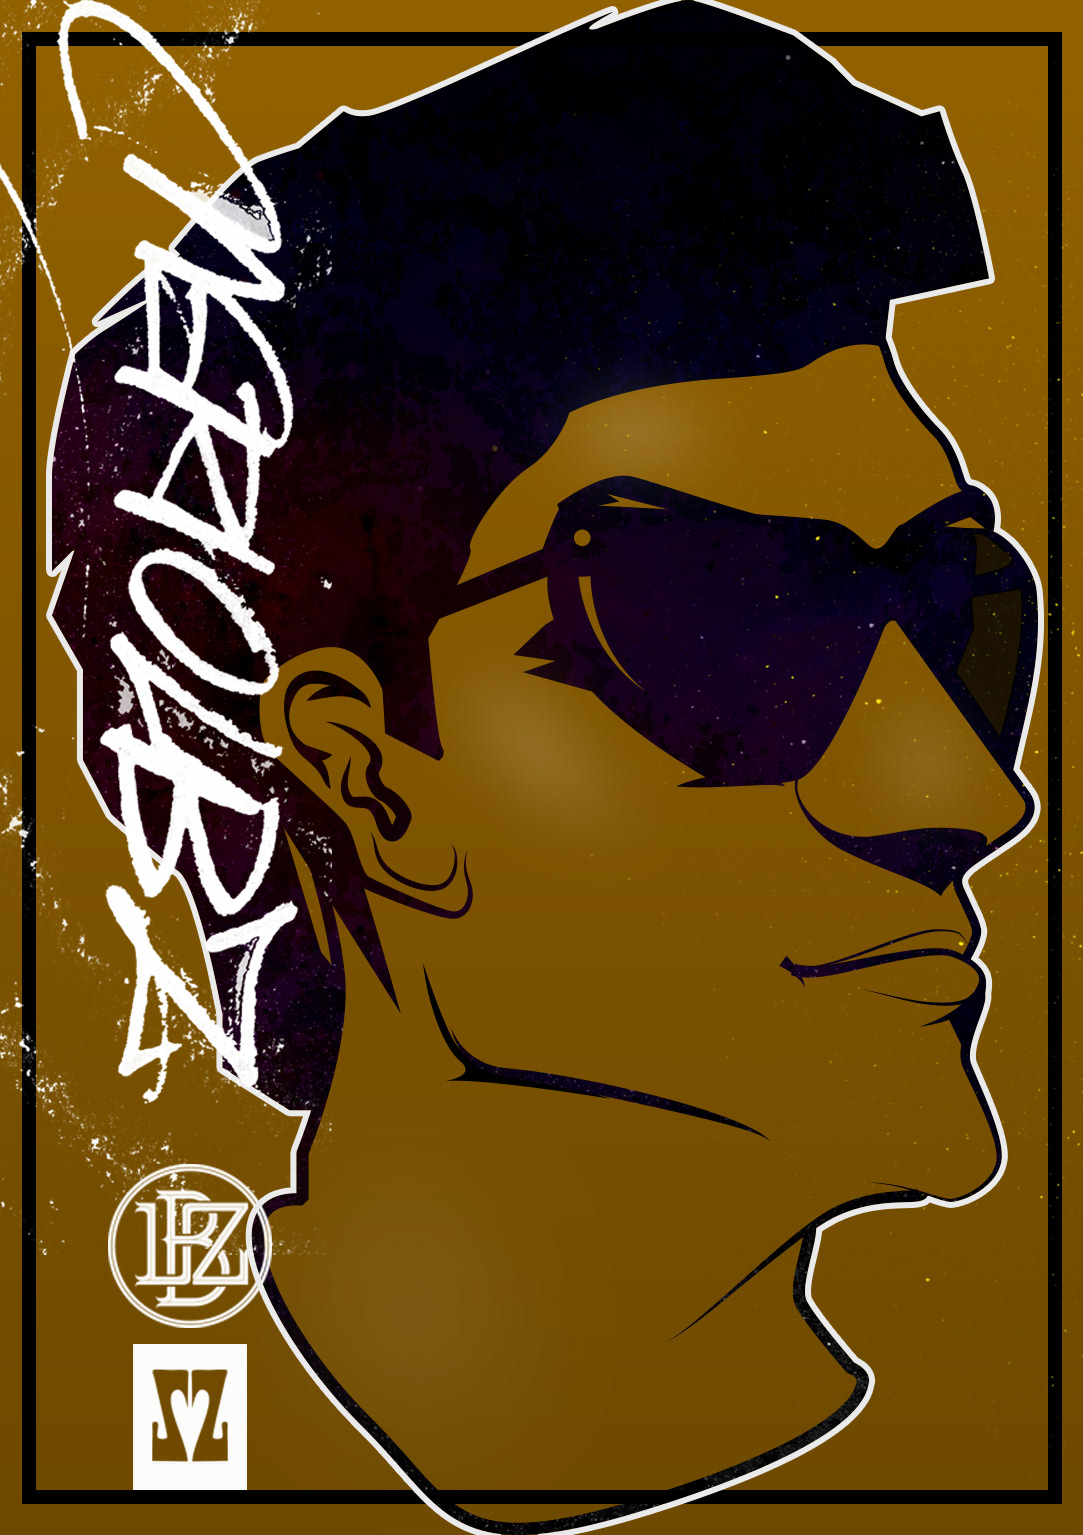 lbz ZZ I love mazzini ilovemazzini rap hip-hop poster portrait